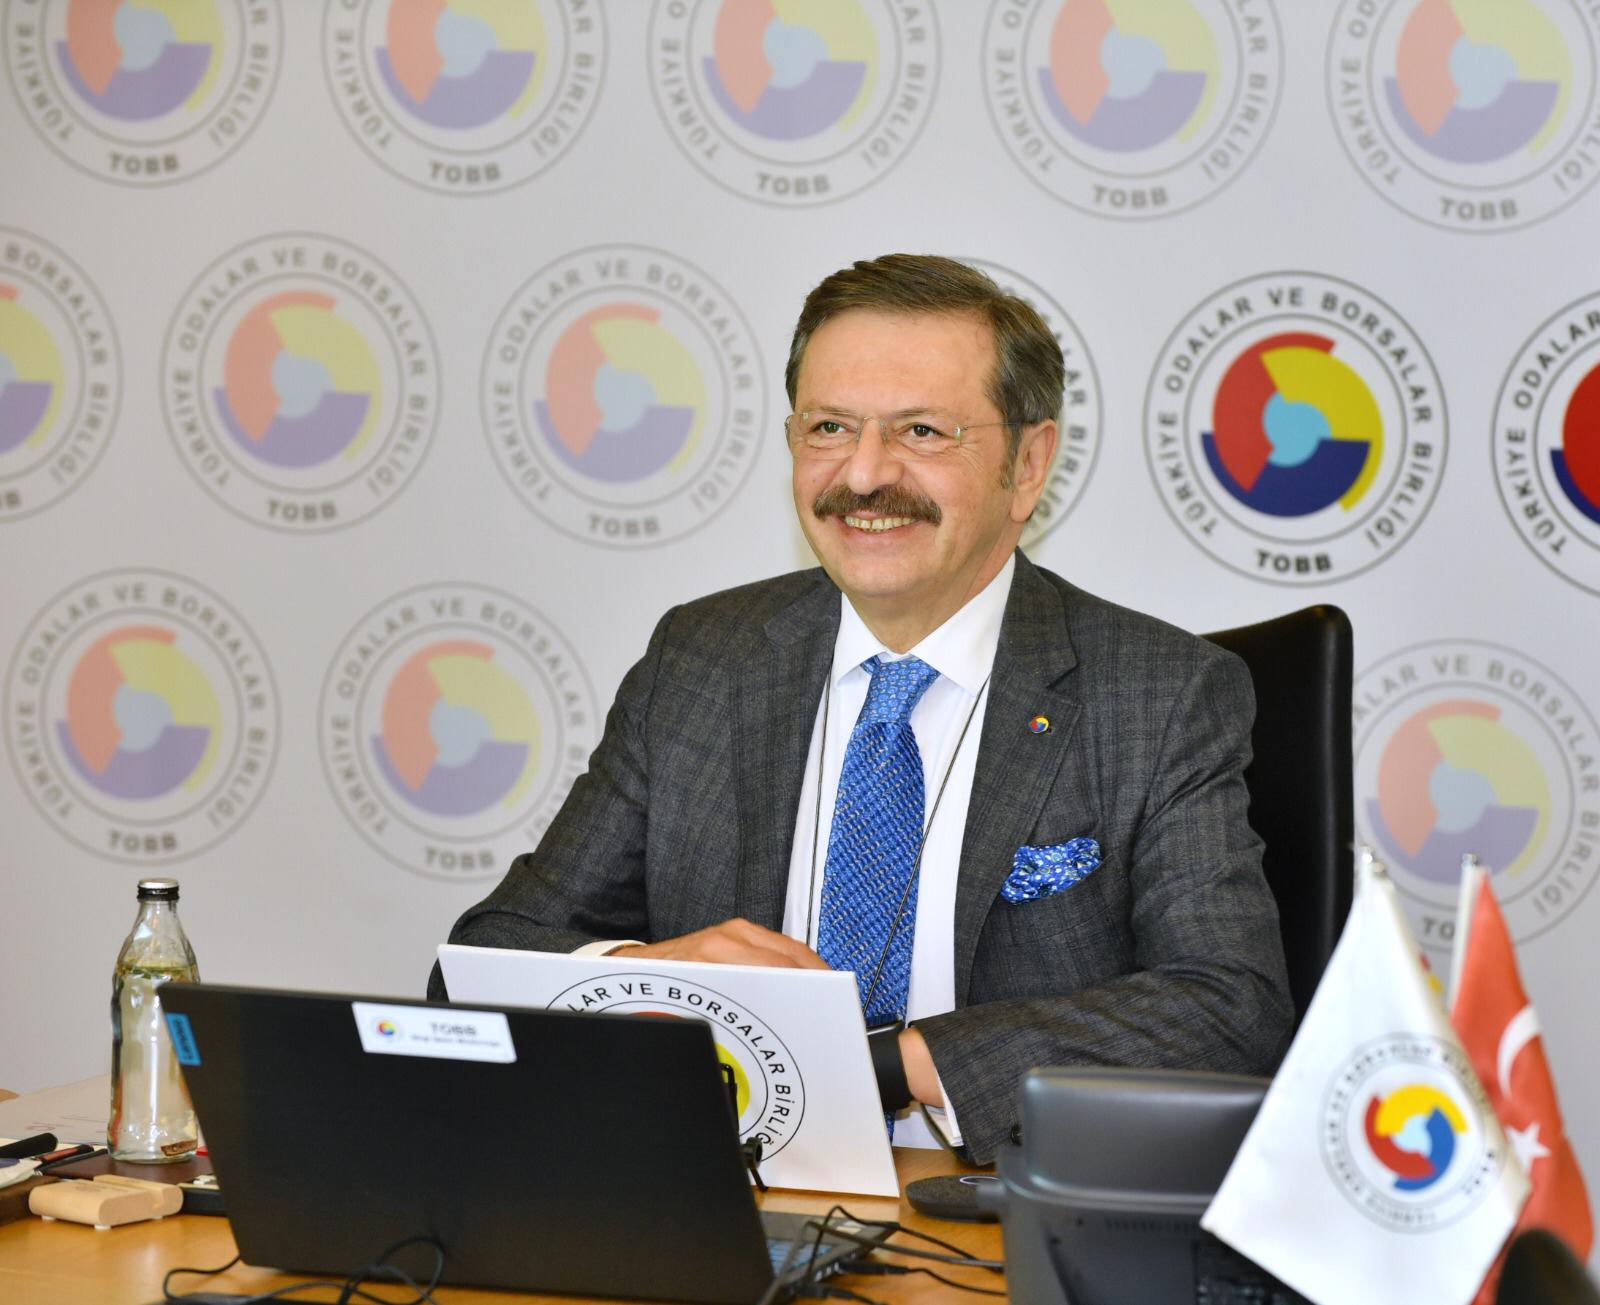 TOBB Başkanı Hisarcıklıoğlu, kendisine cumhurbaşkanlığı adaylığı teklif edildiği iddiasını yalanladı